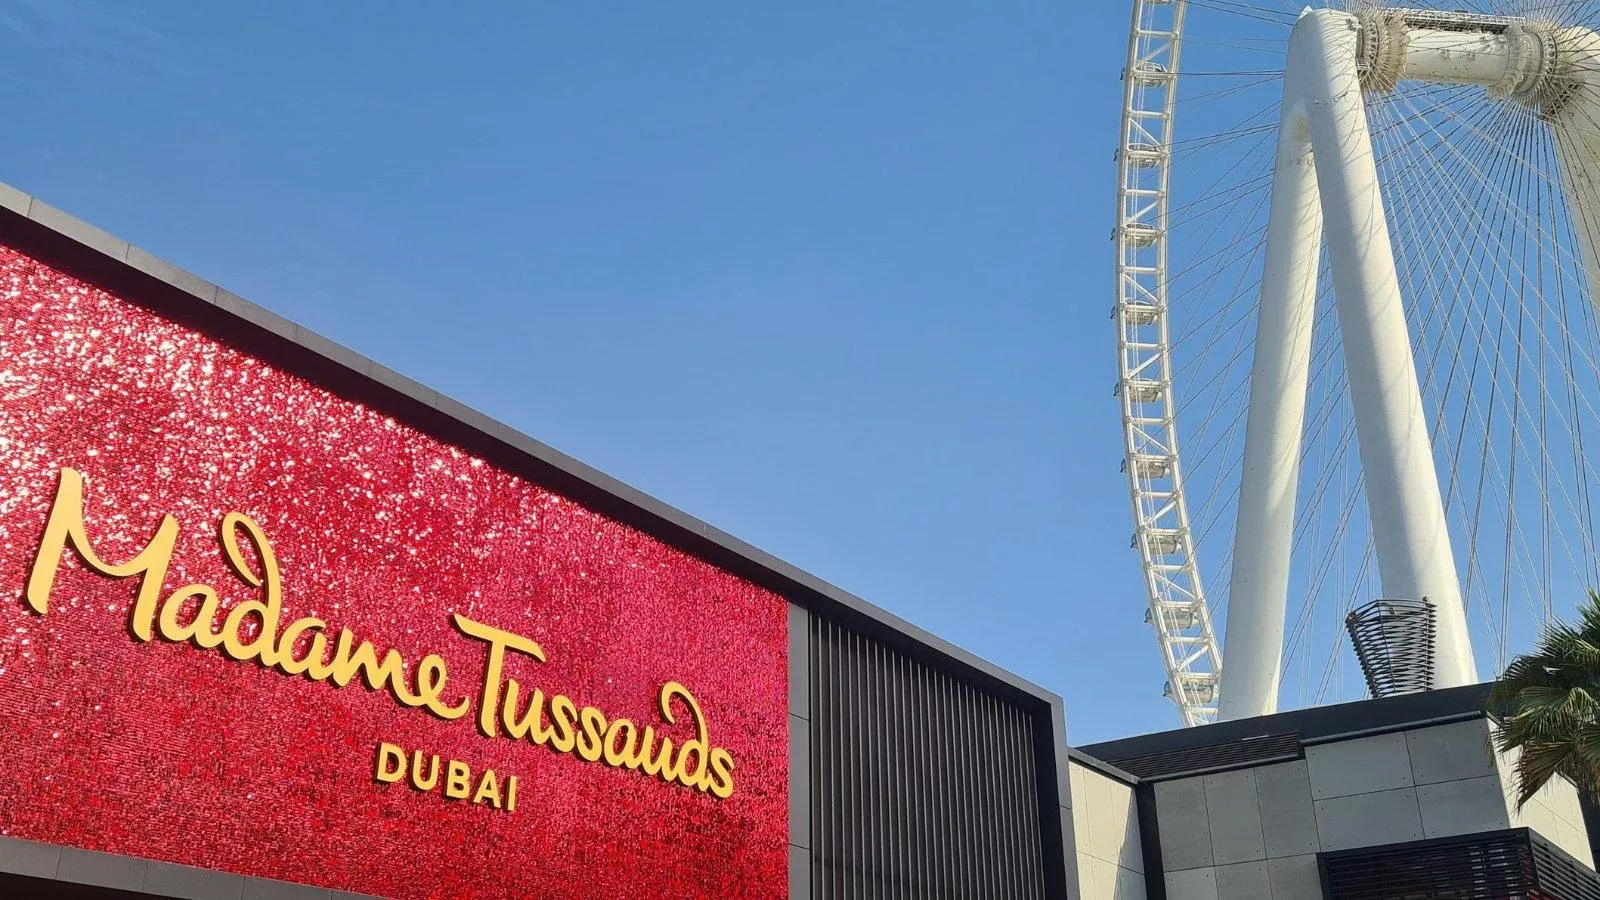 متحف مدام توسو في دبي يفتتح أبوابه للزوار... ضعيه على قائمة وجهاتكِ المقبلة